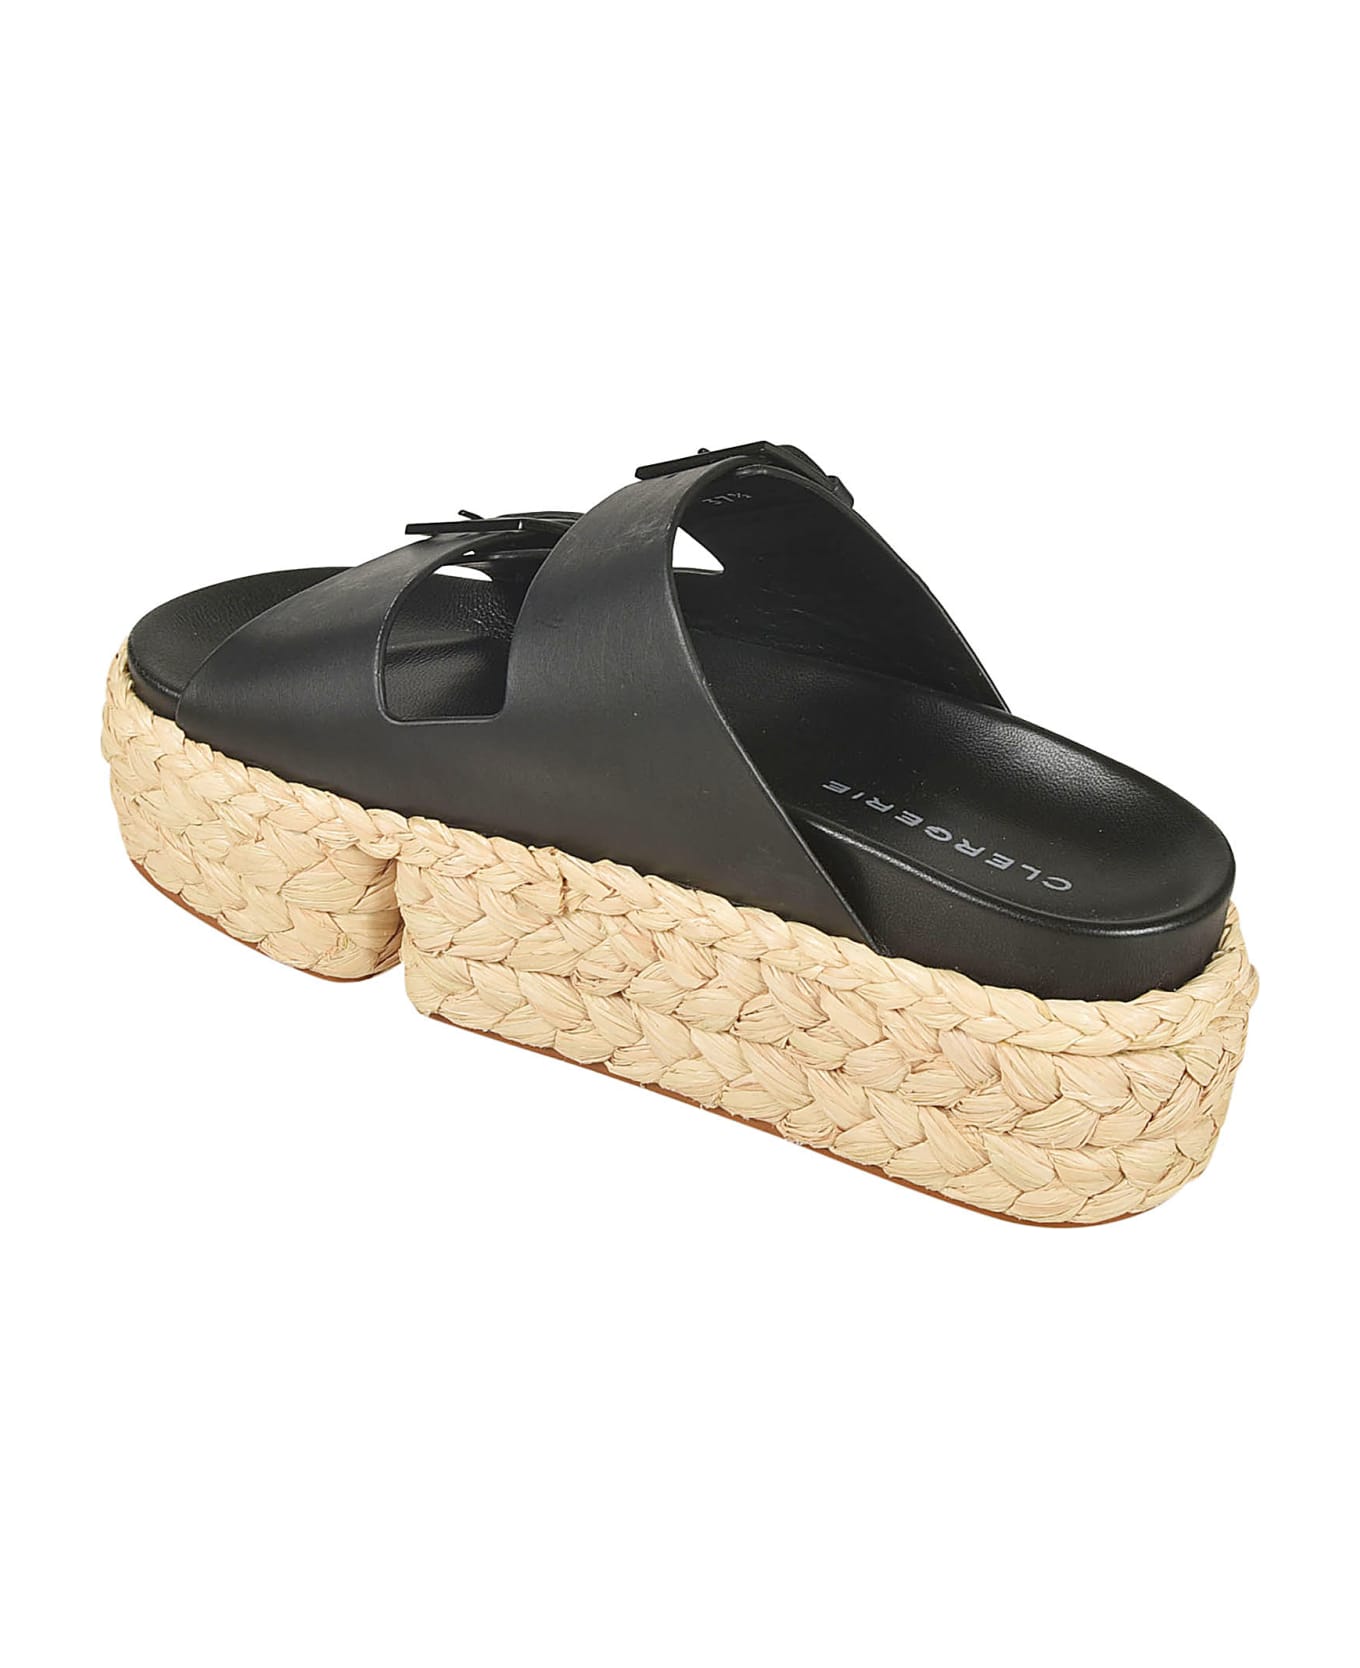 Clergerie Qiana Wedge Sandals - Black サンダル